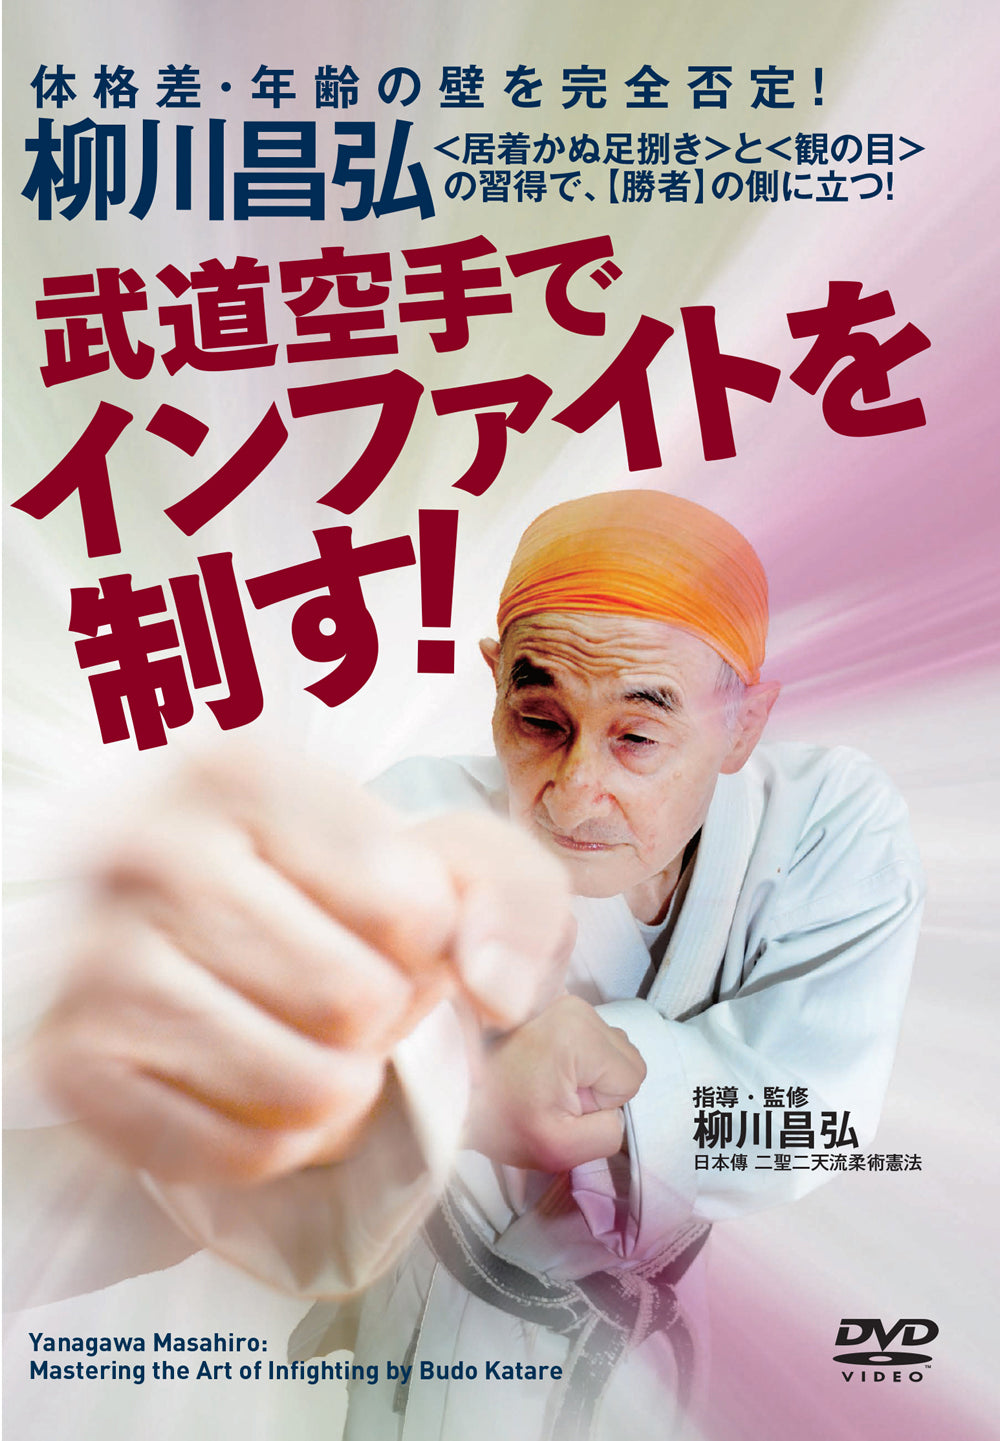 Mastering the Art of Budo Karate Infighting  DVD by Masahiro Yanagawa